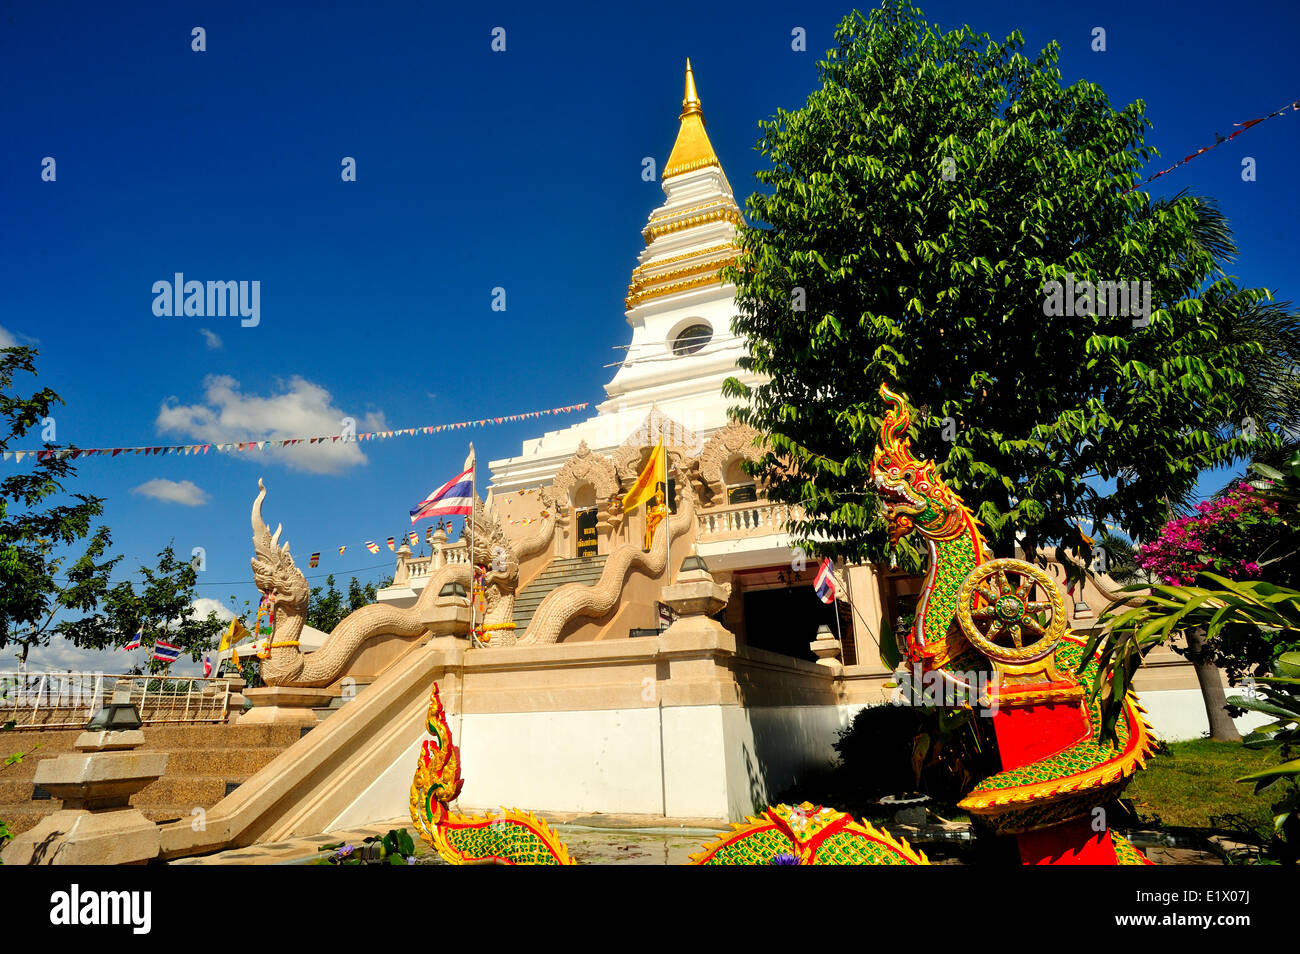 Wat Staat, Nong Khai, Thailand Stock Photo